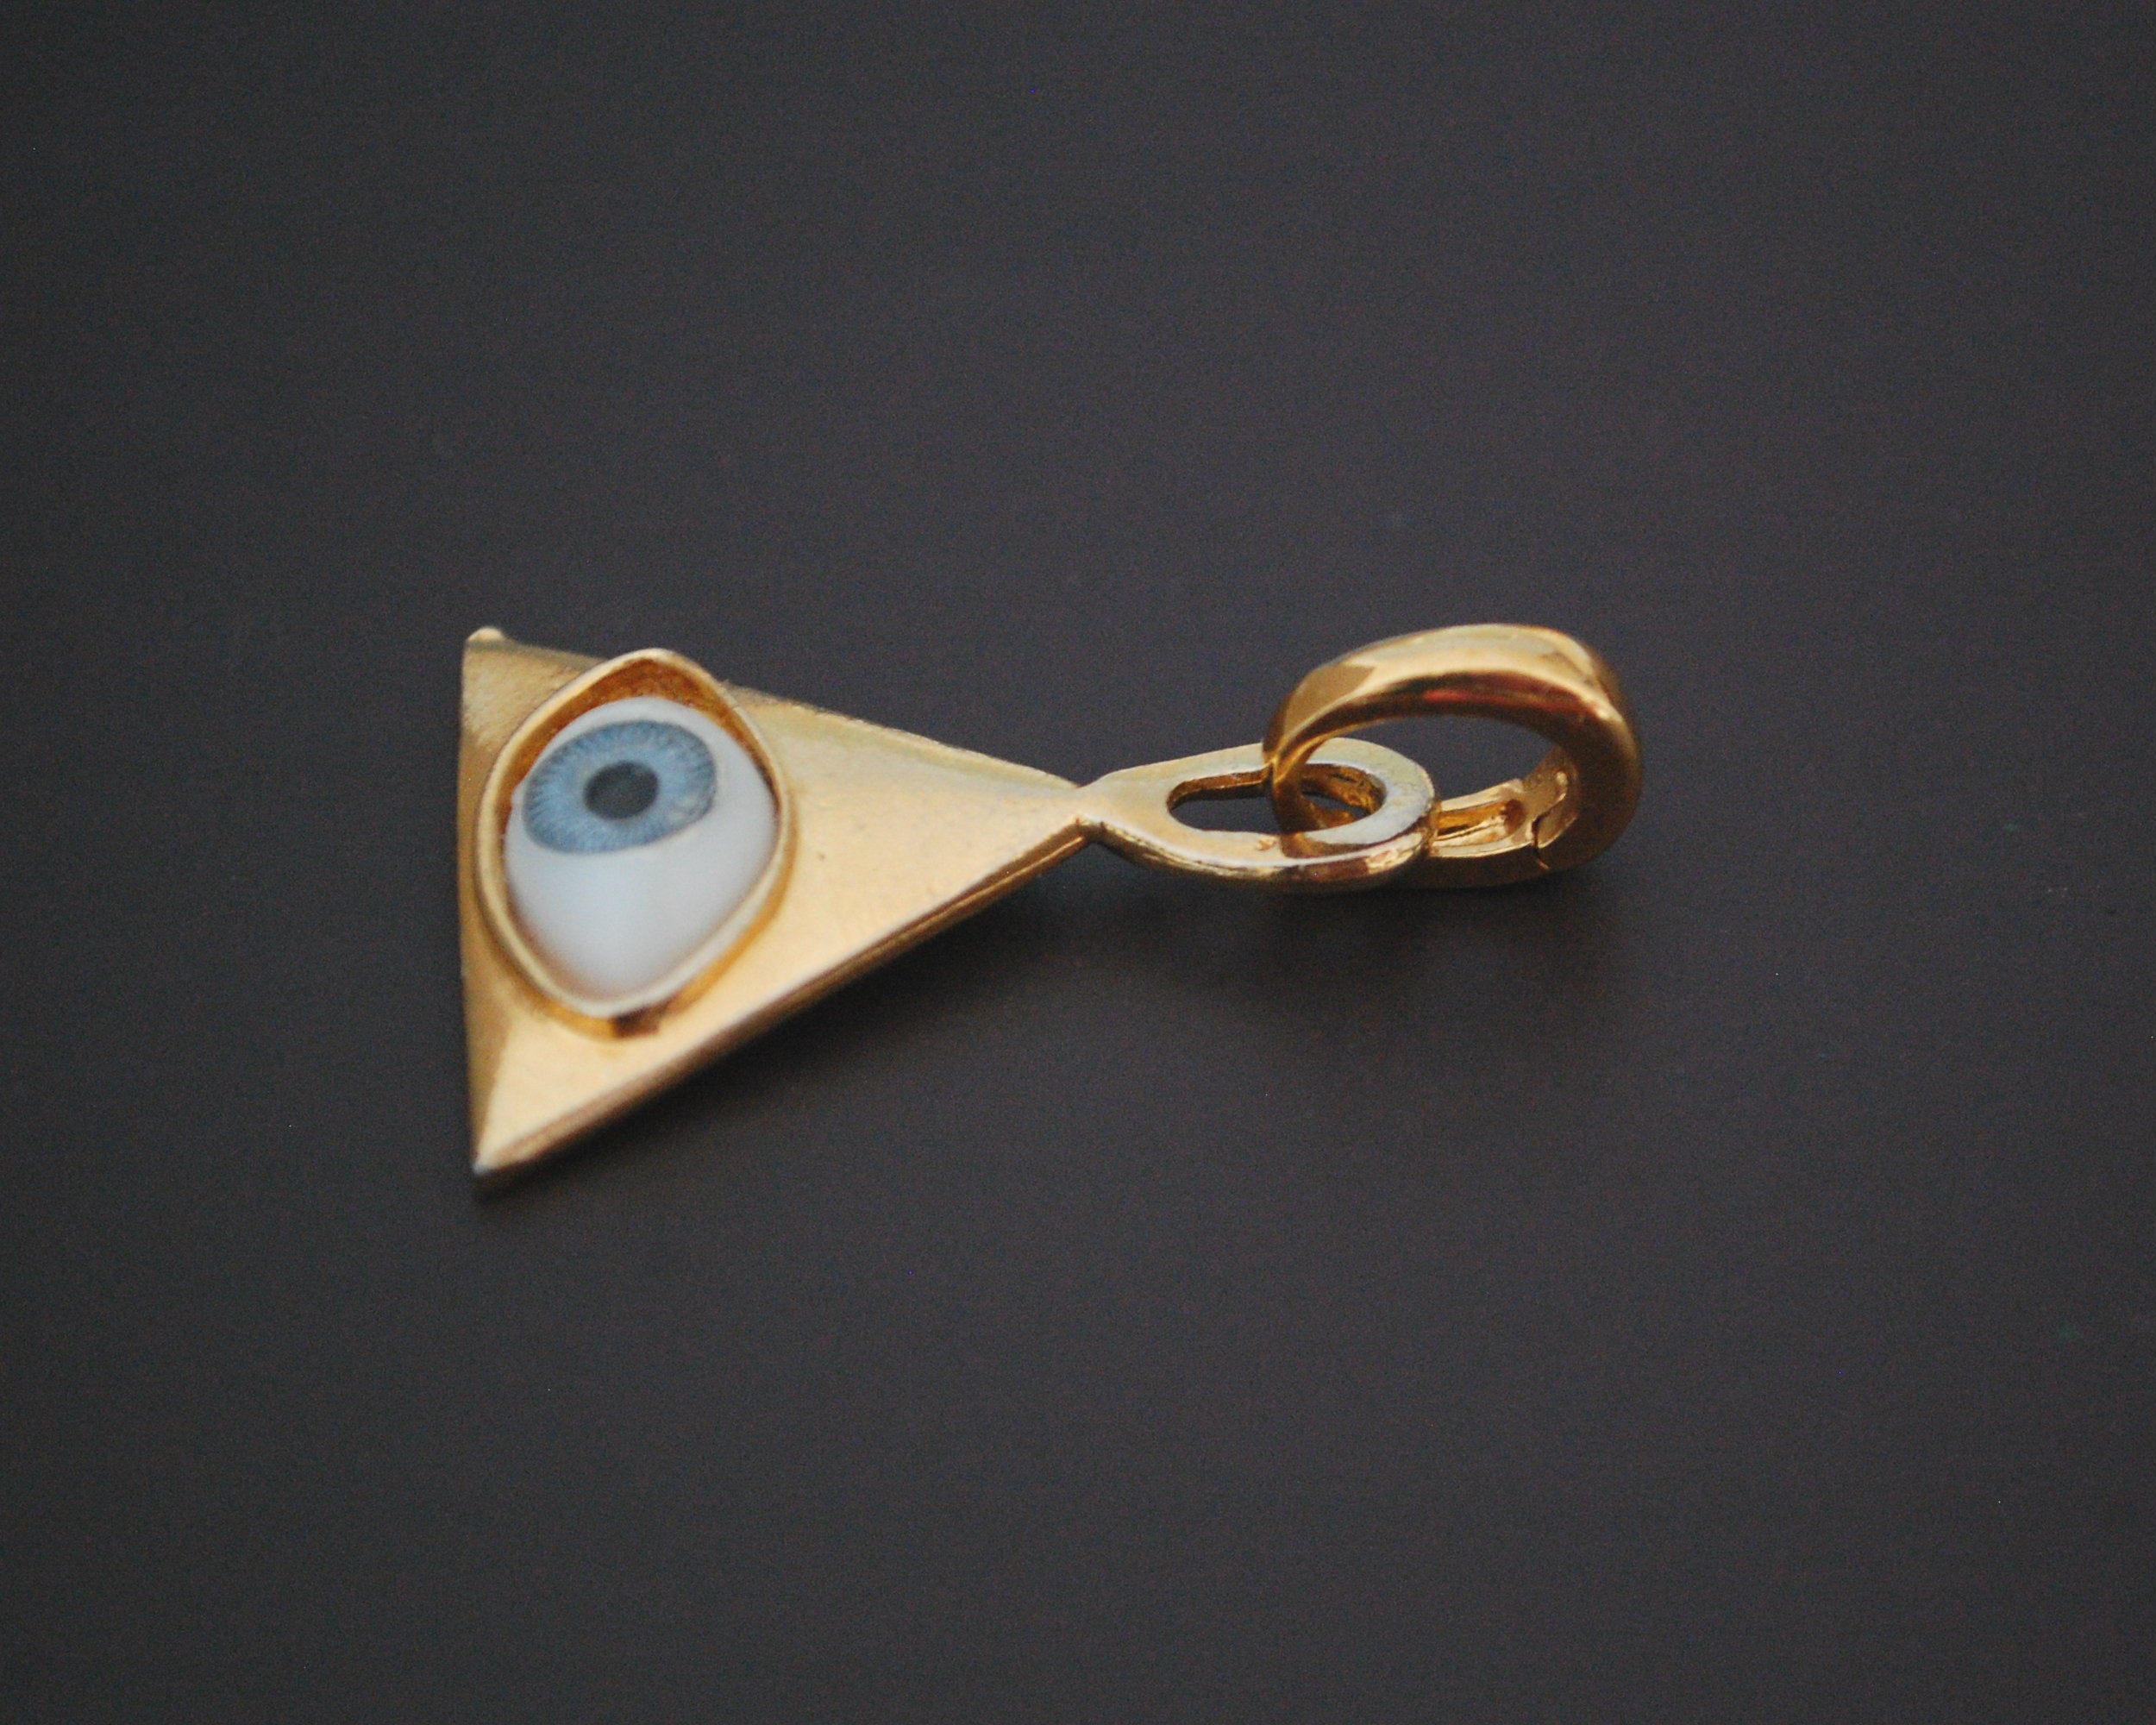 Magical Gilded Eye Amulet Pendant